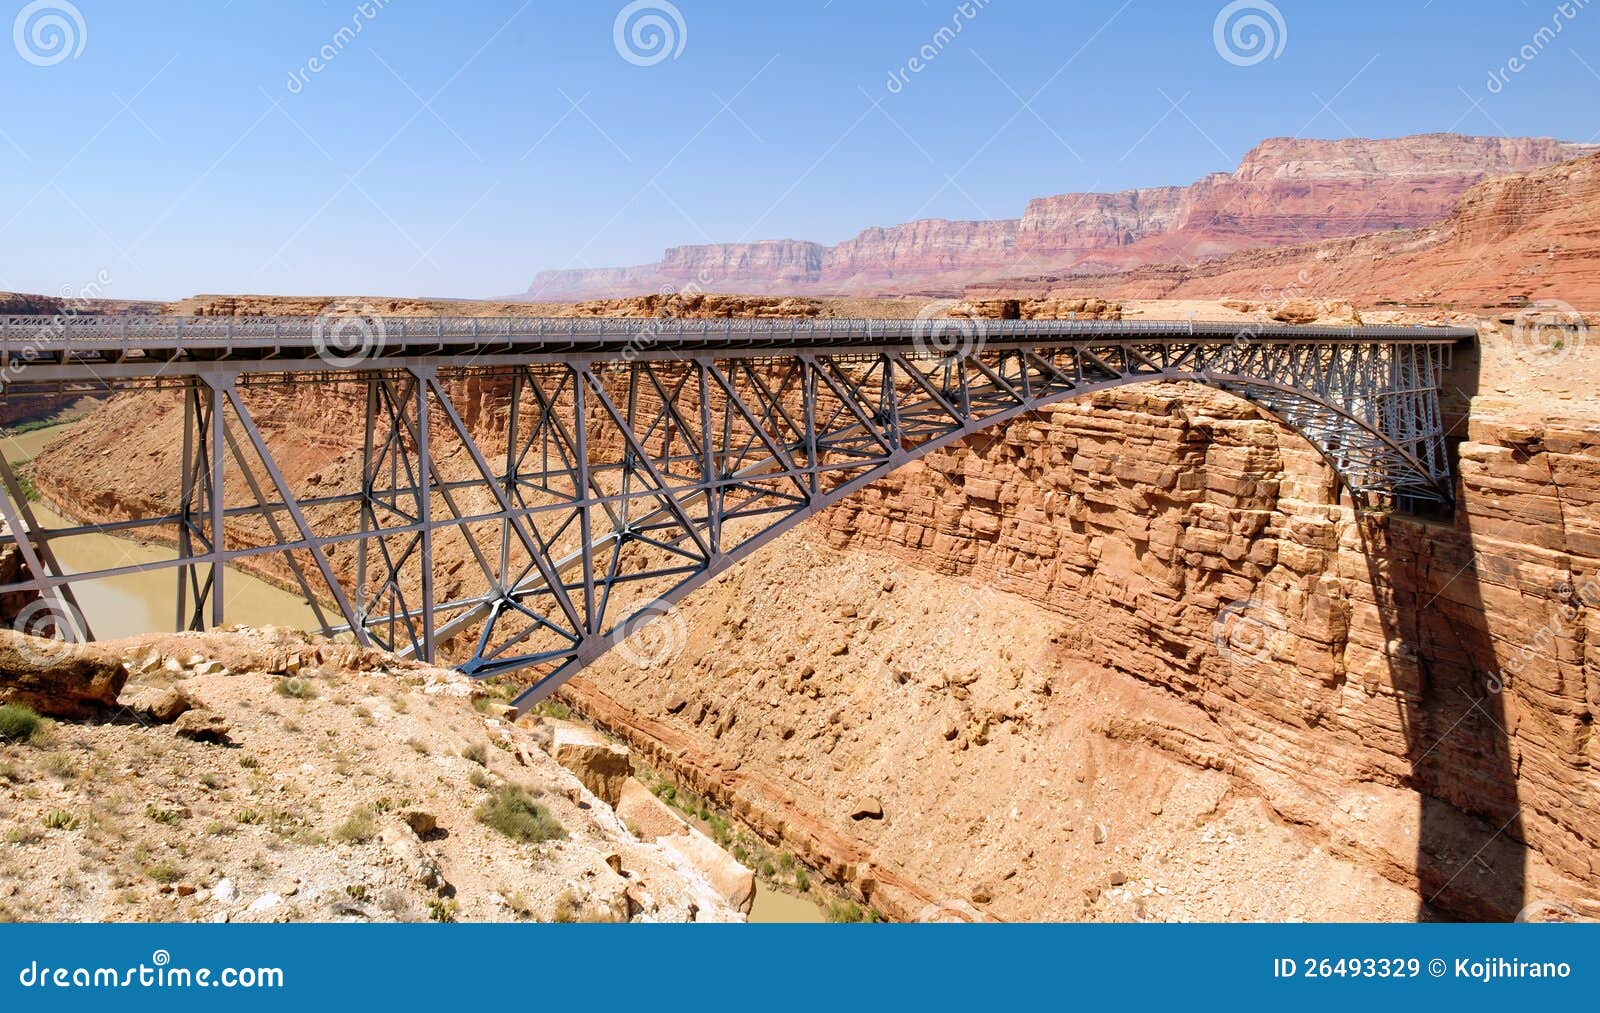 Мост Навайо над рекой Колорадо между распадком и грандиозным каньоном